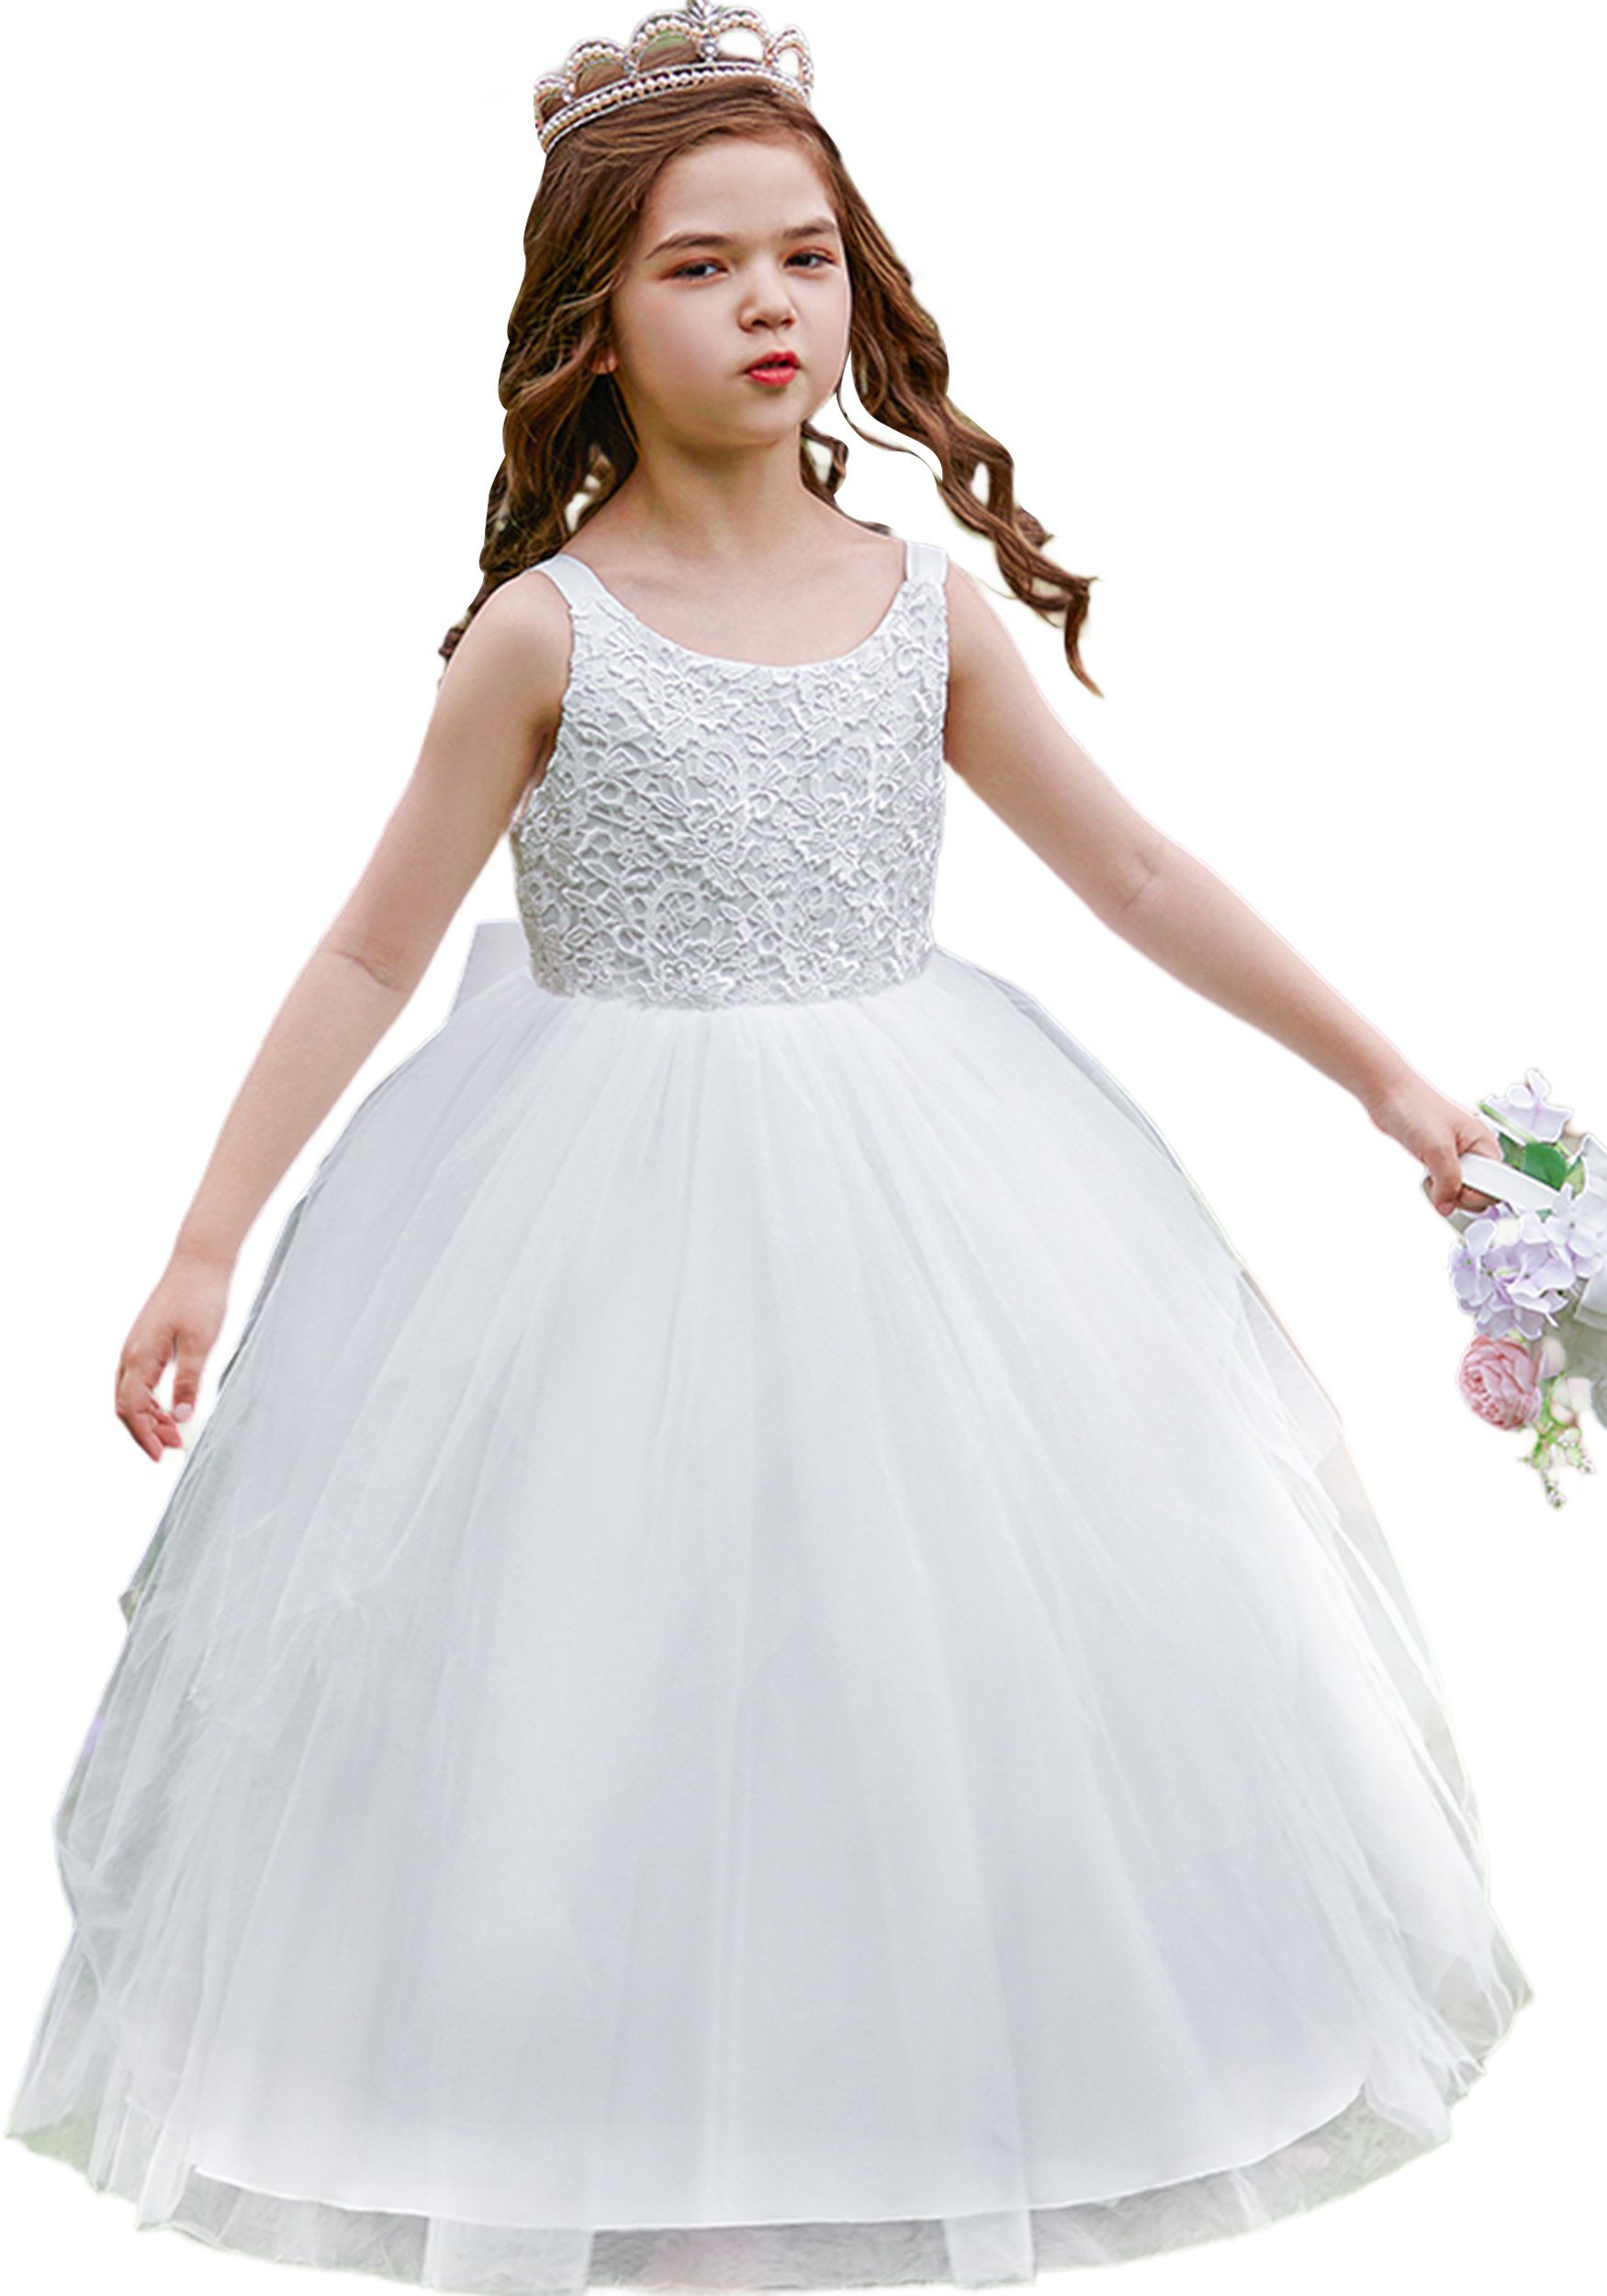 Prinzessin Daisred Partykleid Weiß Kleider Mädchenkleider Kleidung Performance